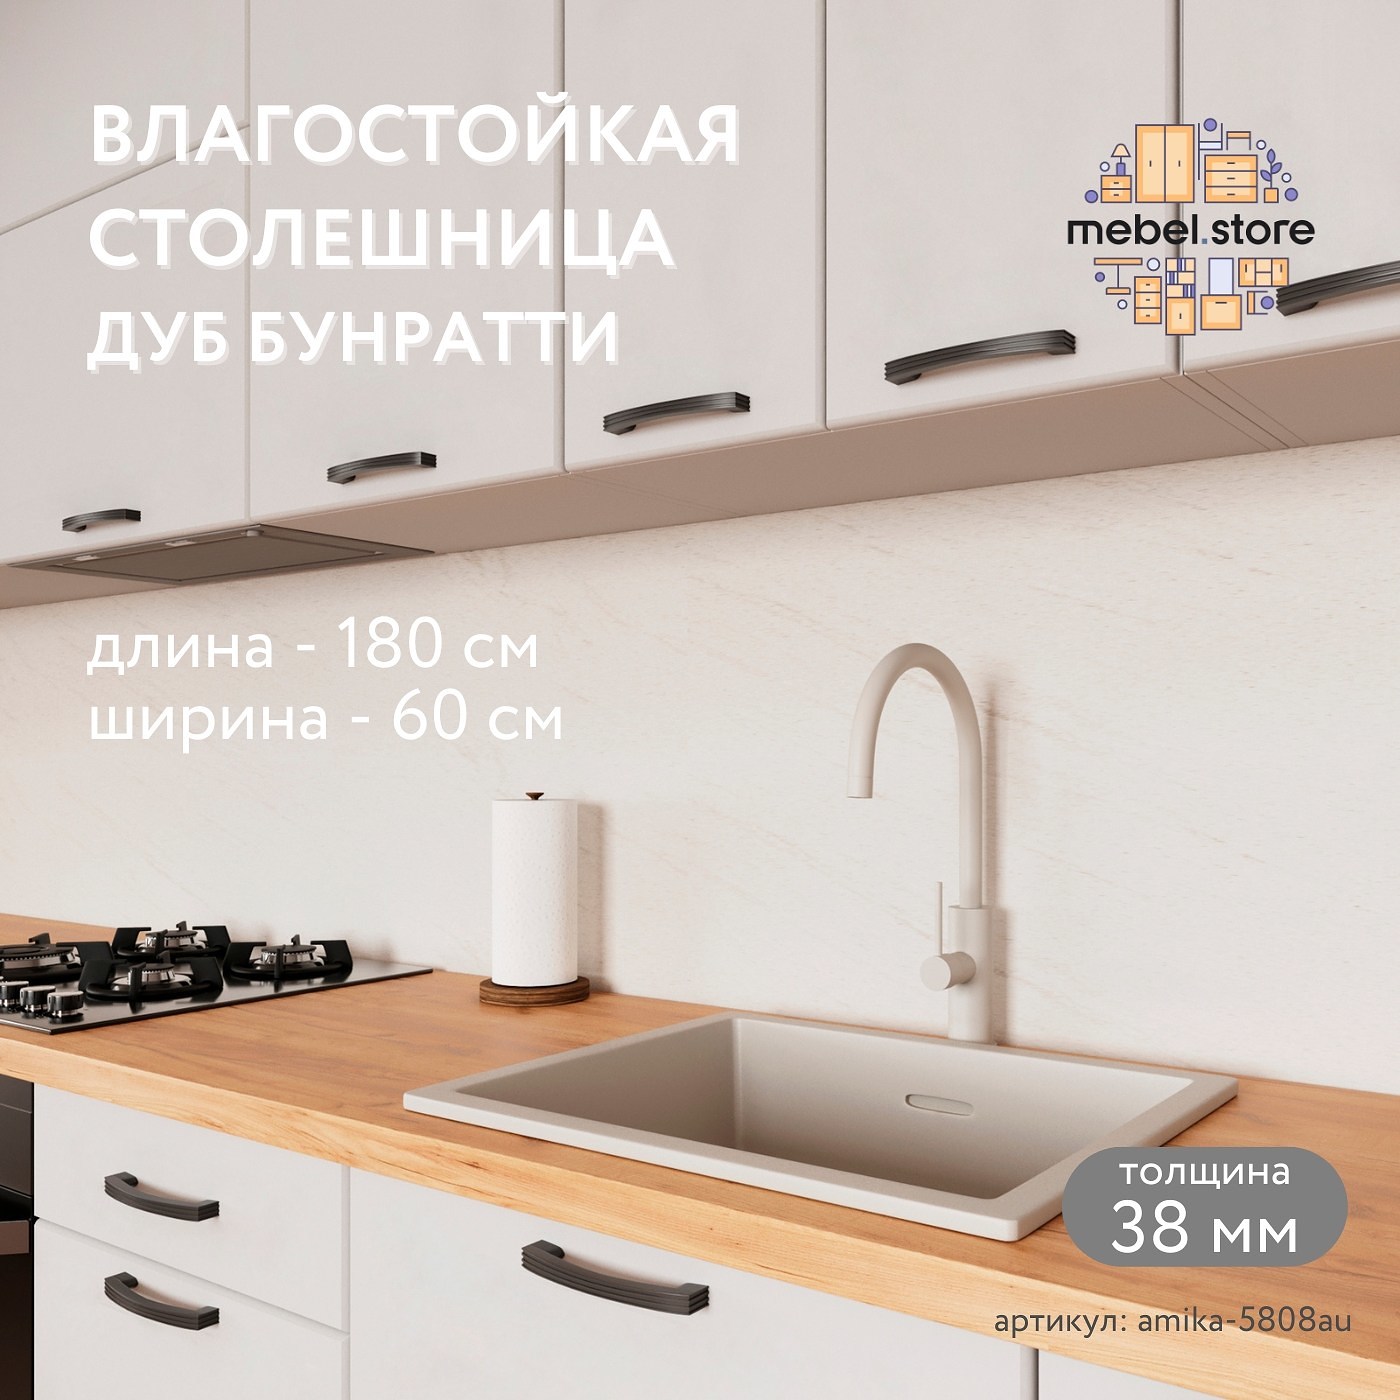 Столешница Амика-5808au минимализм для кухни - фото 1 large